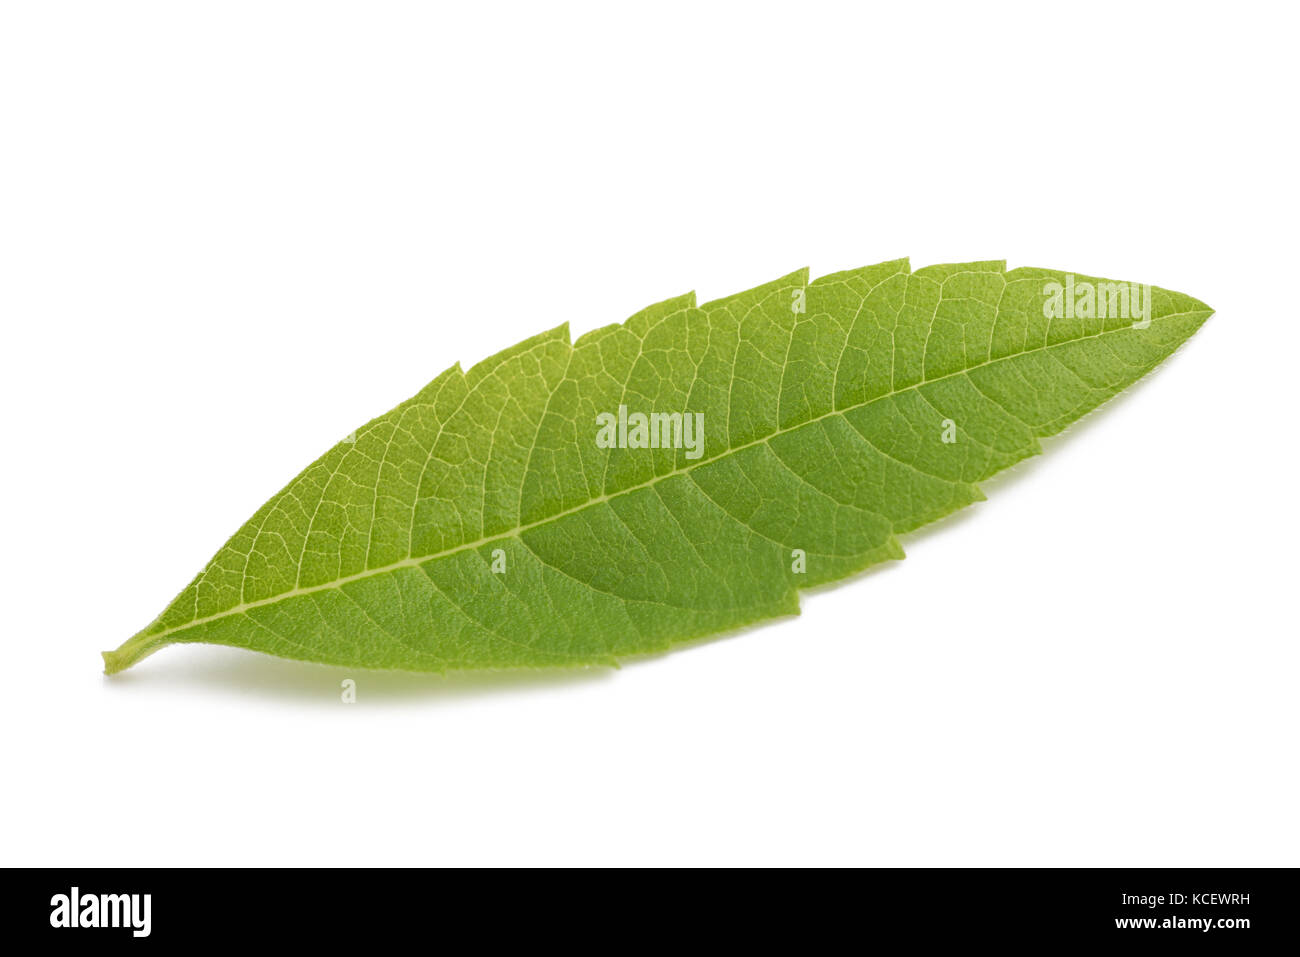 Lemon Verbena leaf(beebrush) isolated on white background Stock Photo